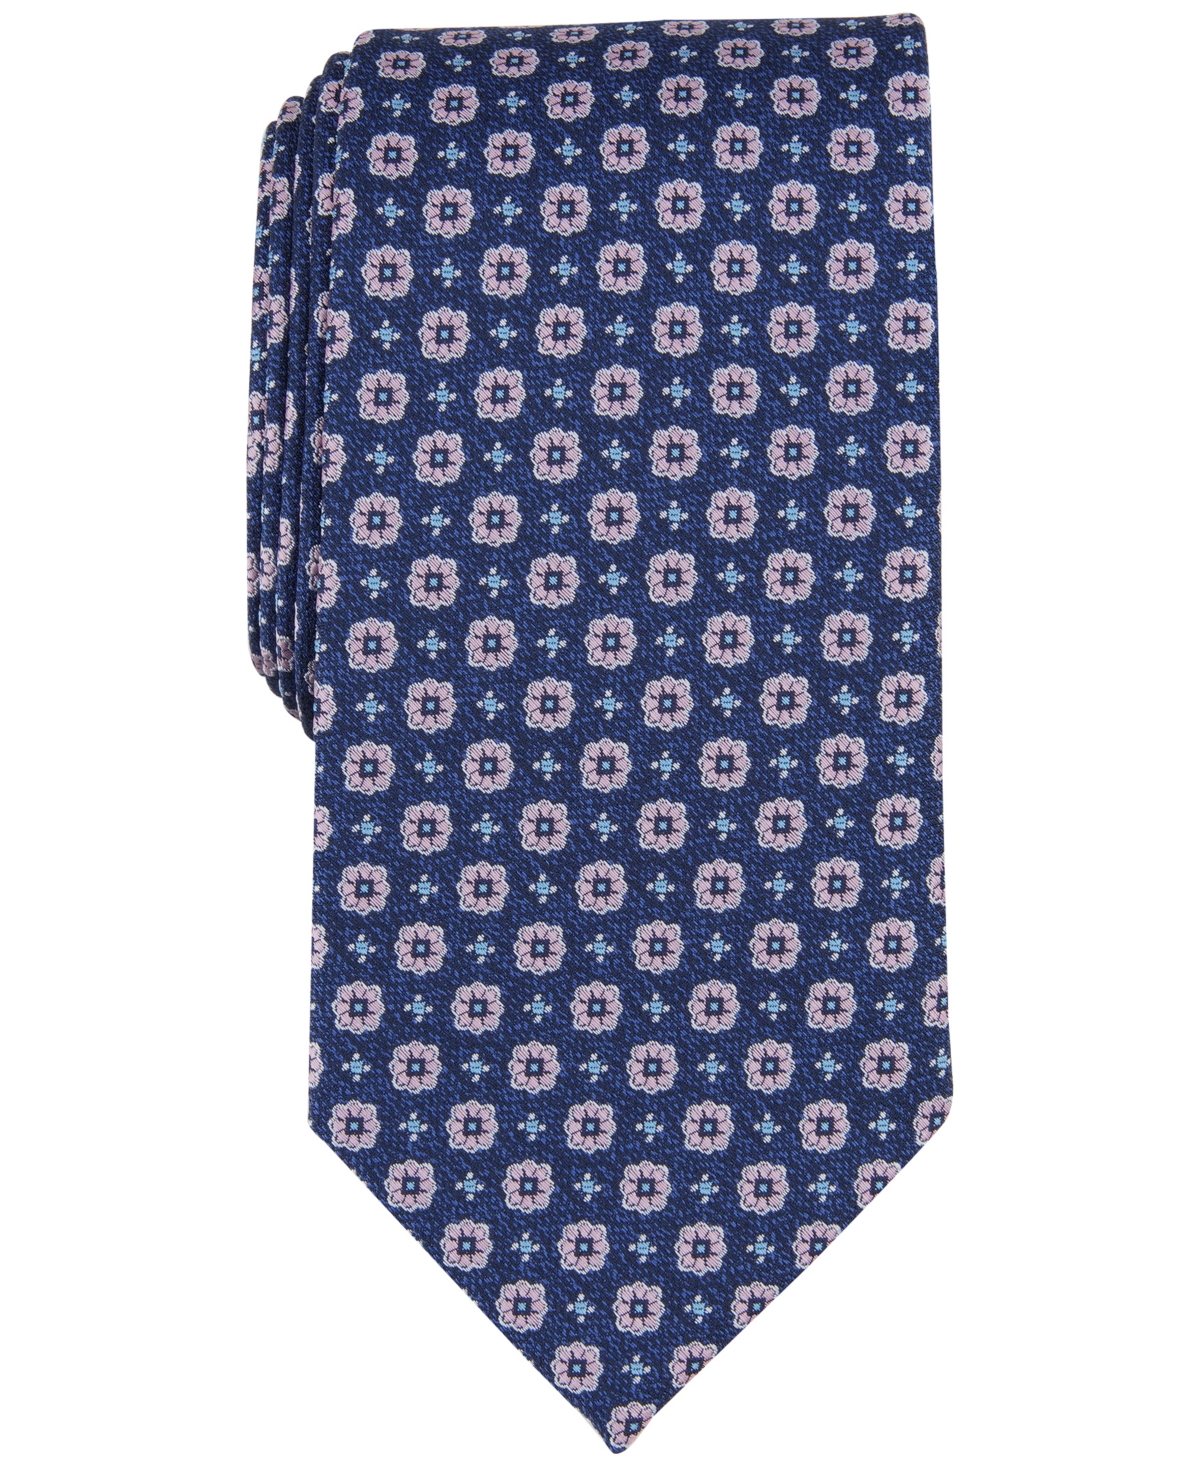 Men's Prospect Medallion Tie, Created for Macy's - Navy